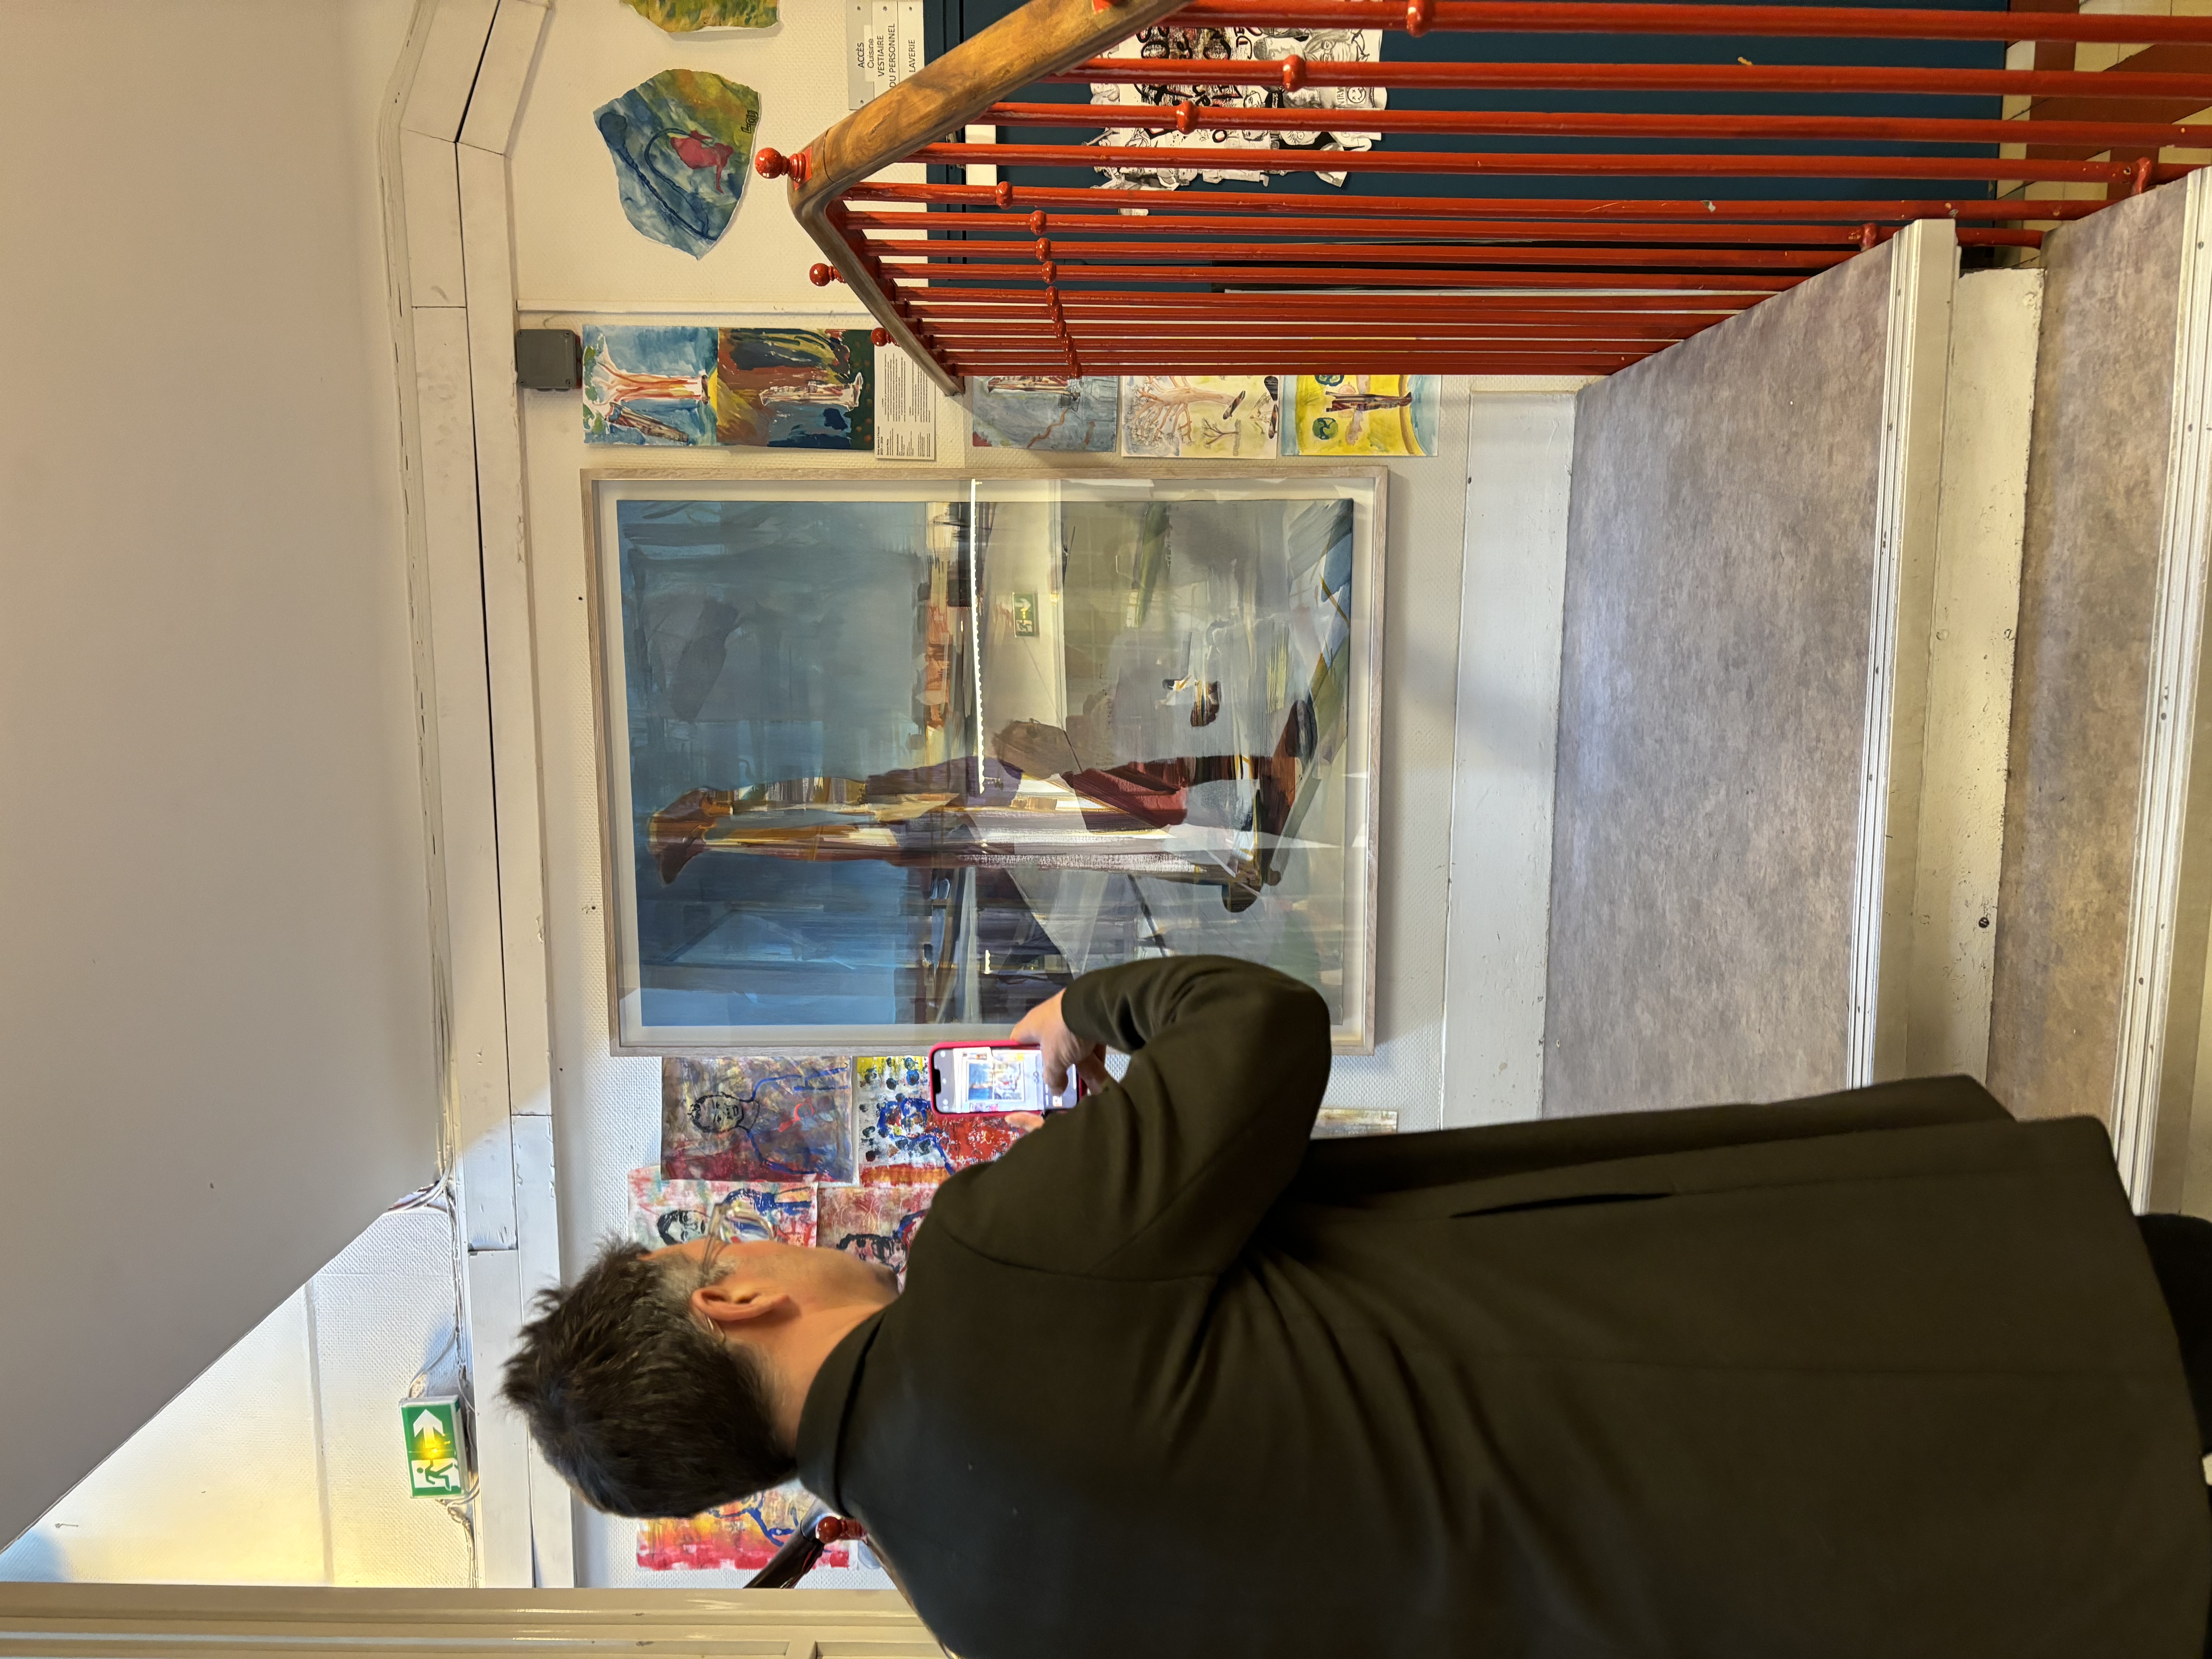 L'artiste est vêtu de noir et se tient dos à nous. Il est face à son tableau installer sur un palier d'escalier. Il est en train de prendre l’œuvre en photo avec son téléphone.